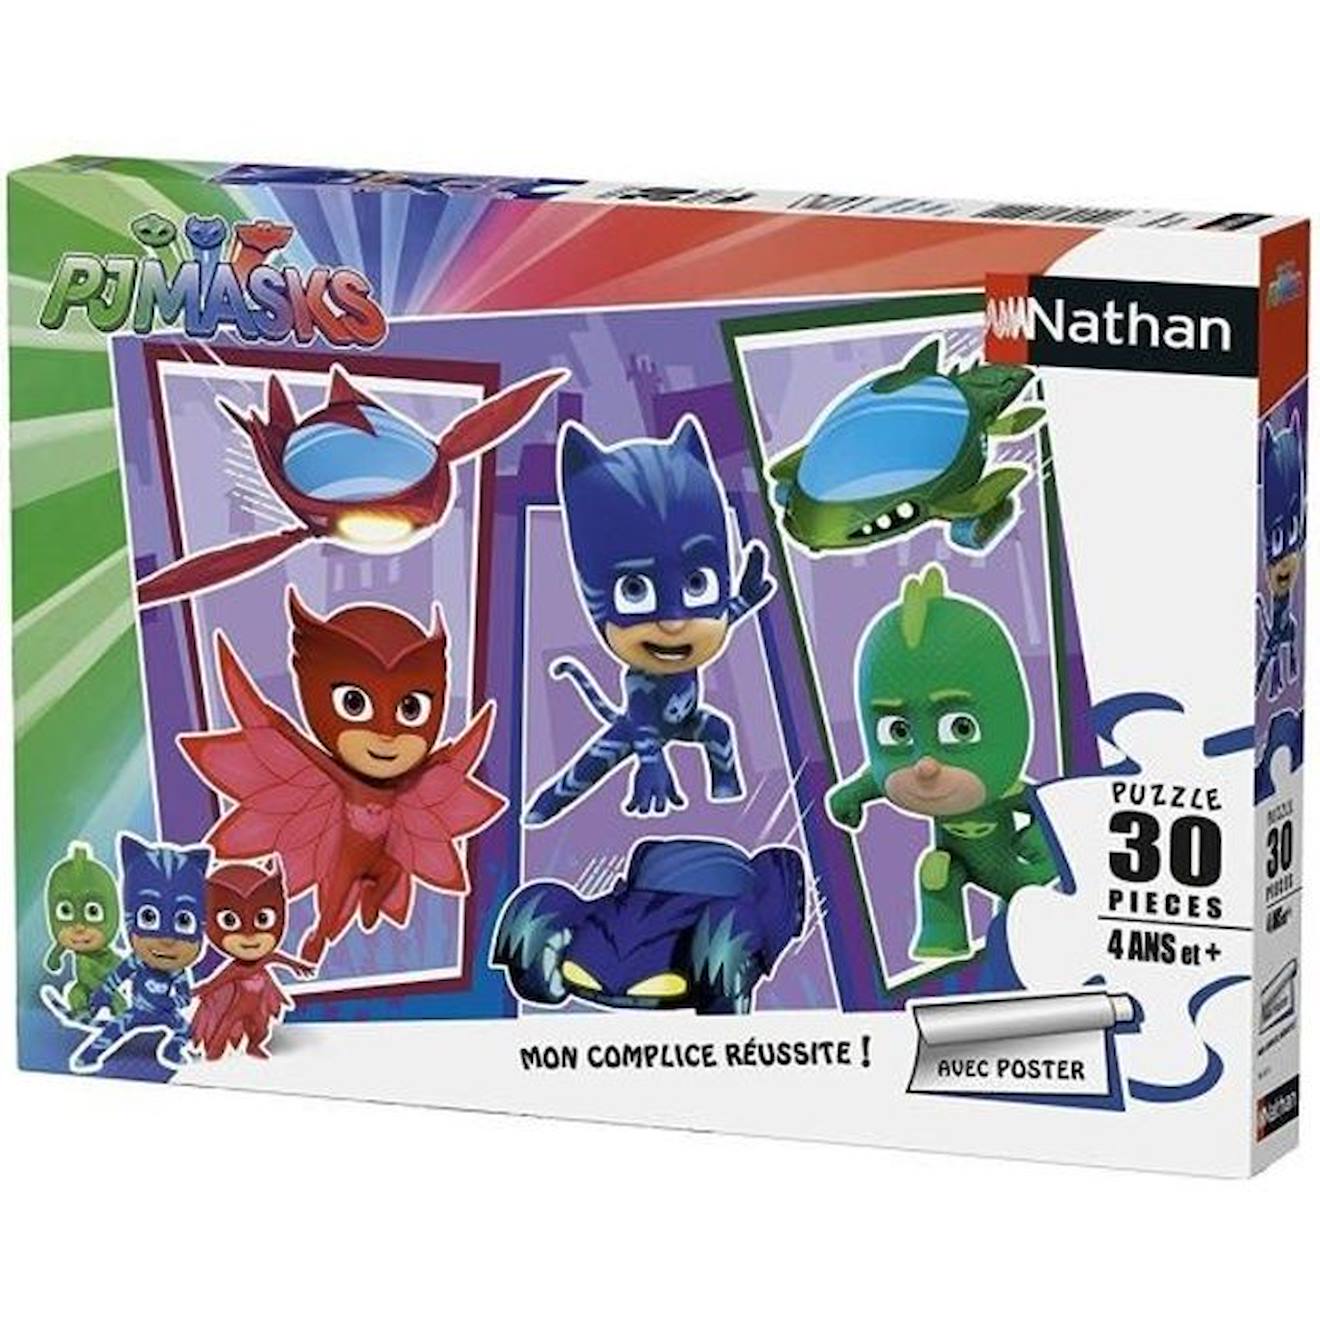 Puzzle Les Pyjamasques 30 pièces avec poster - Nathan - Enfant dès 4 ans  violet - Nathan